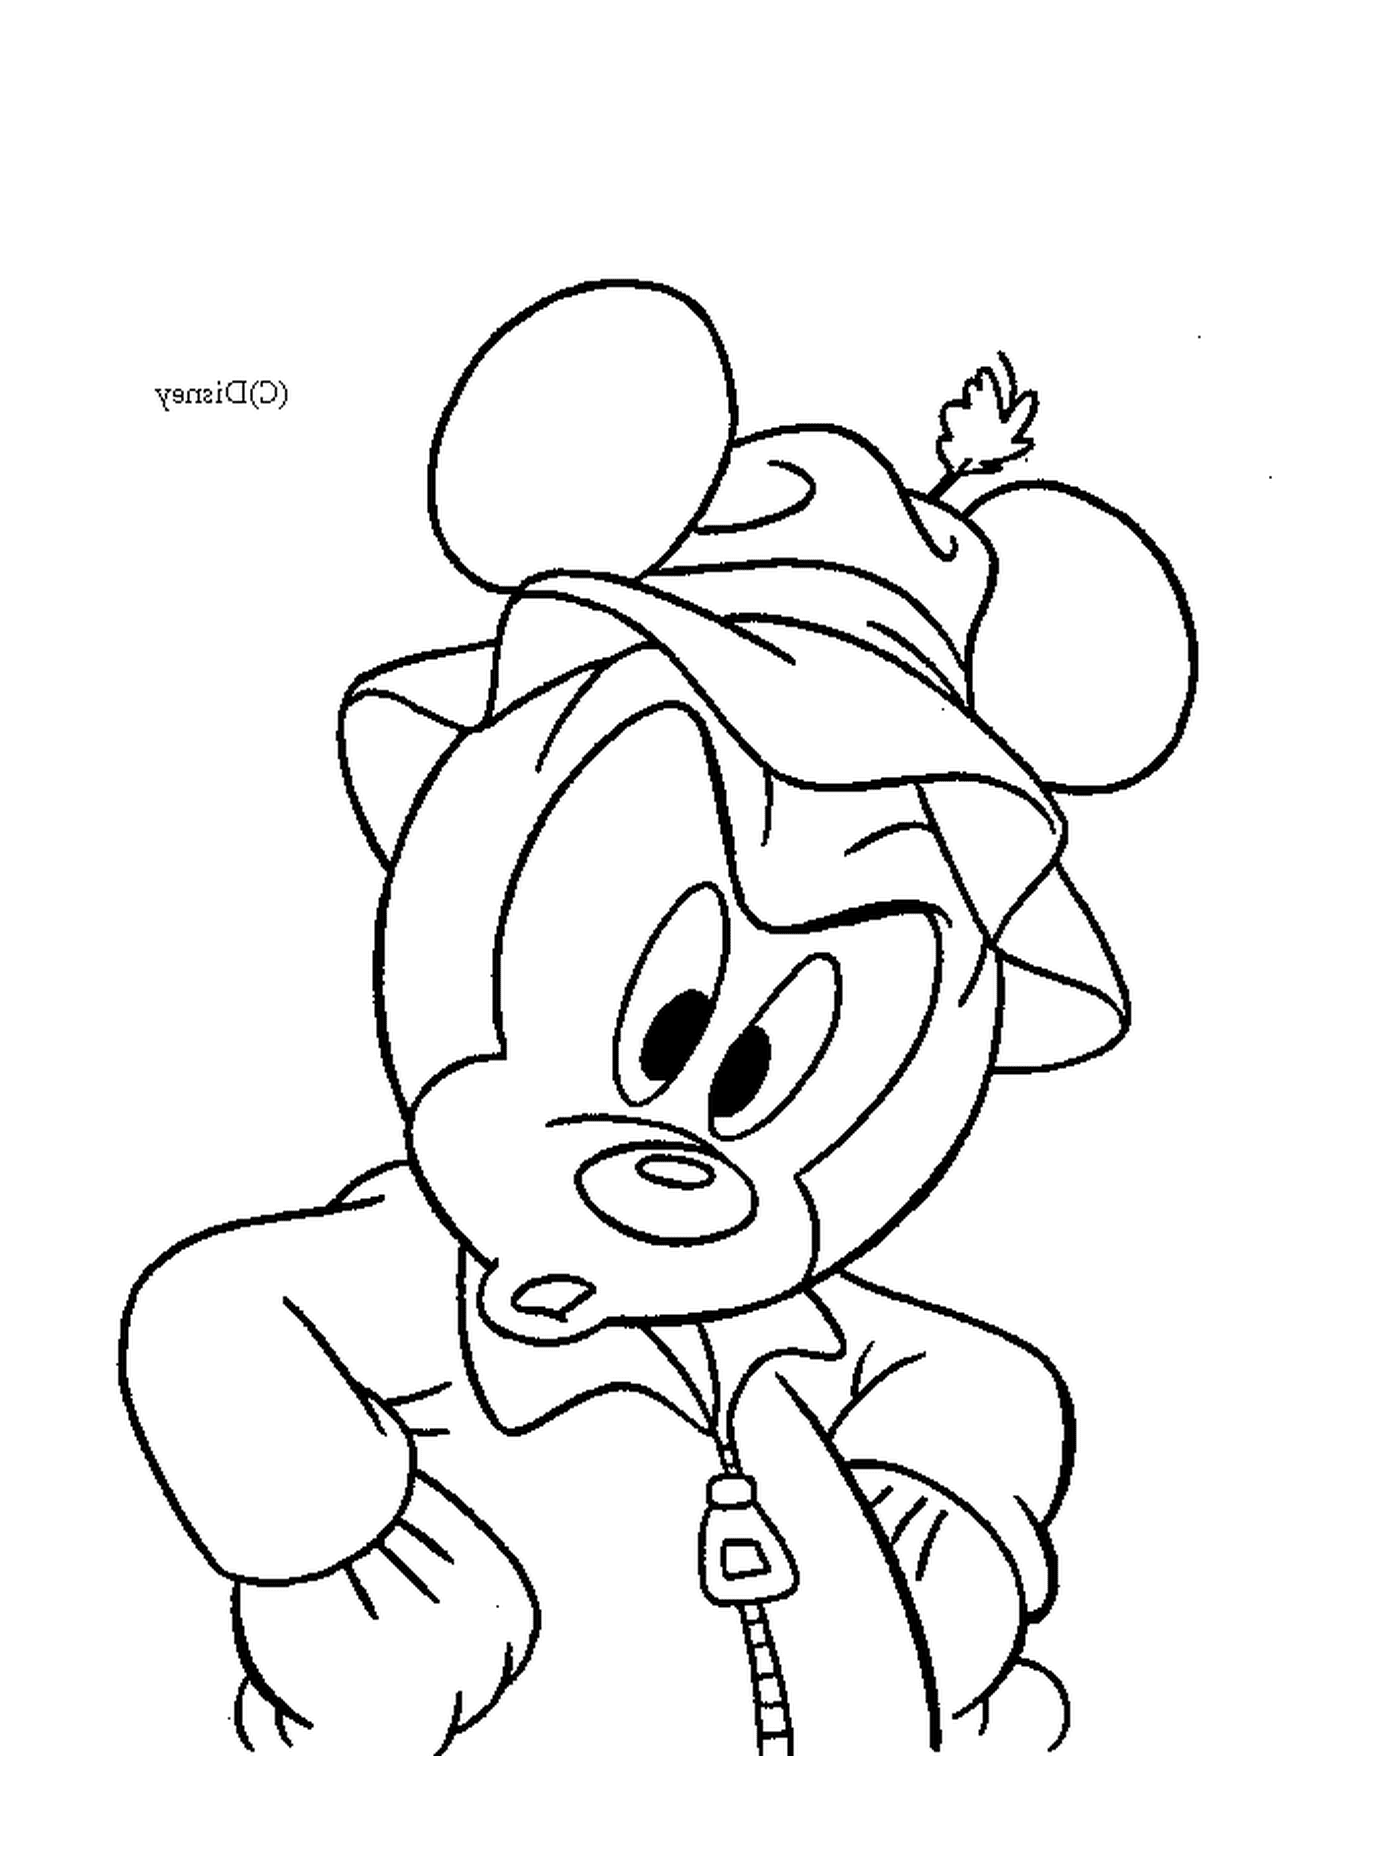  由Mickey画成彩色:Mickey M鼠戴帽子 